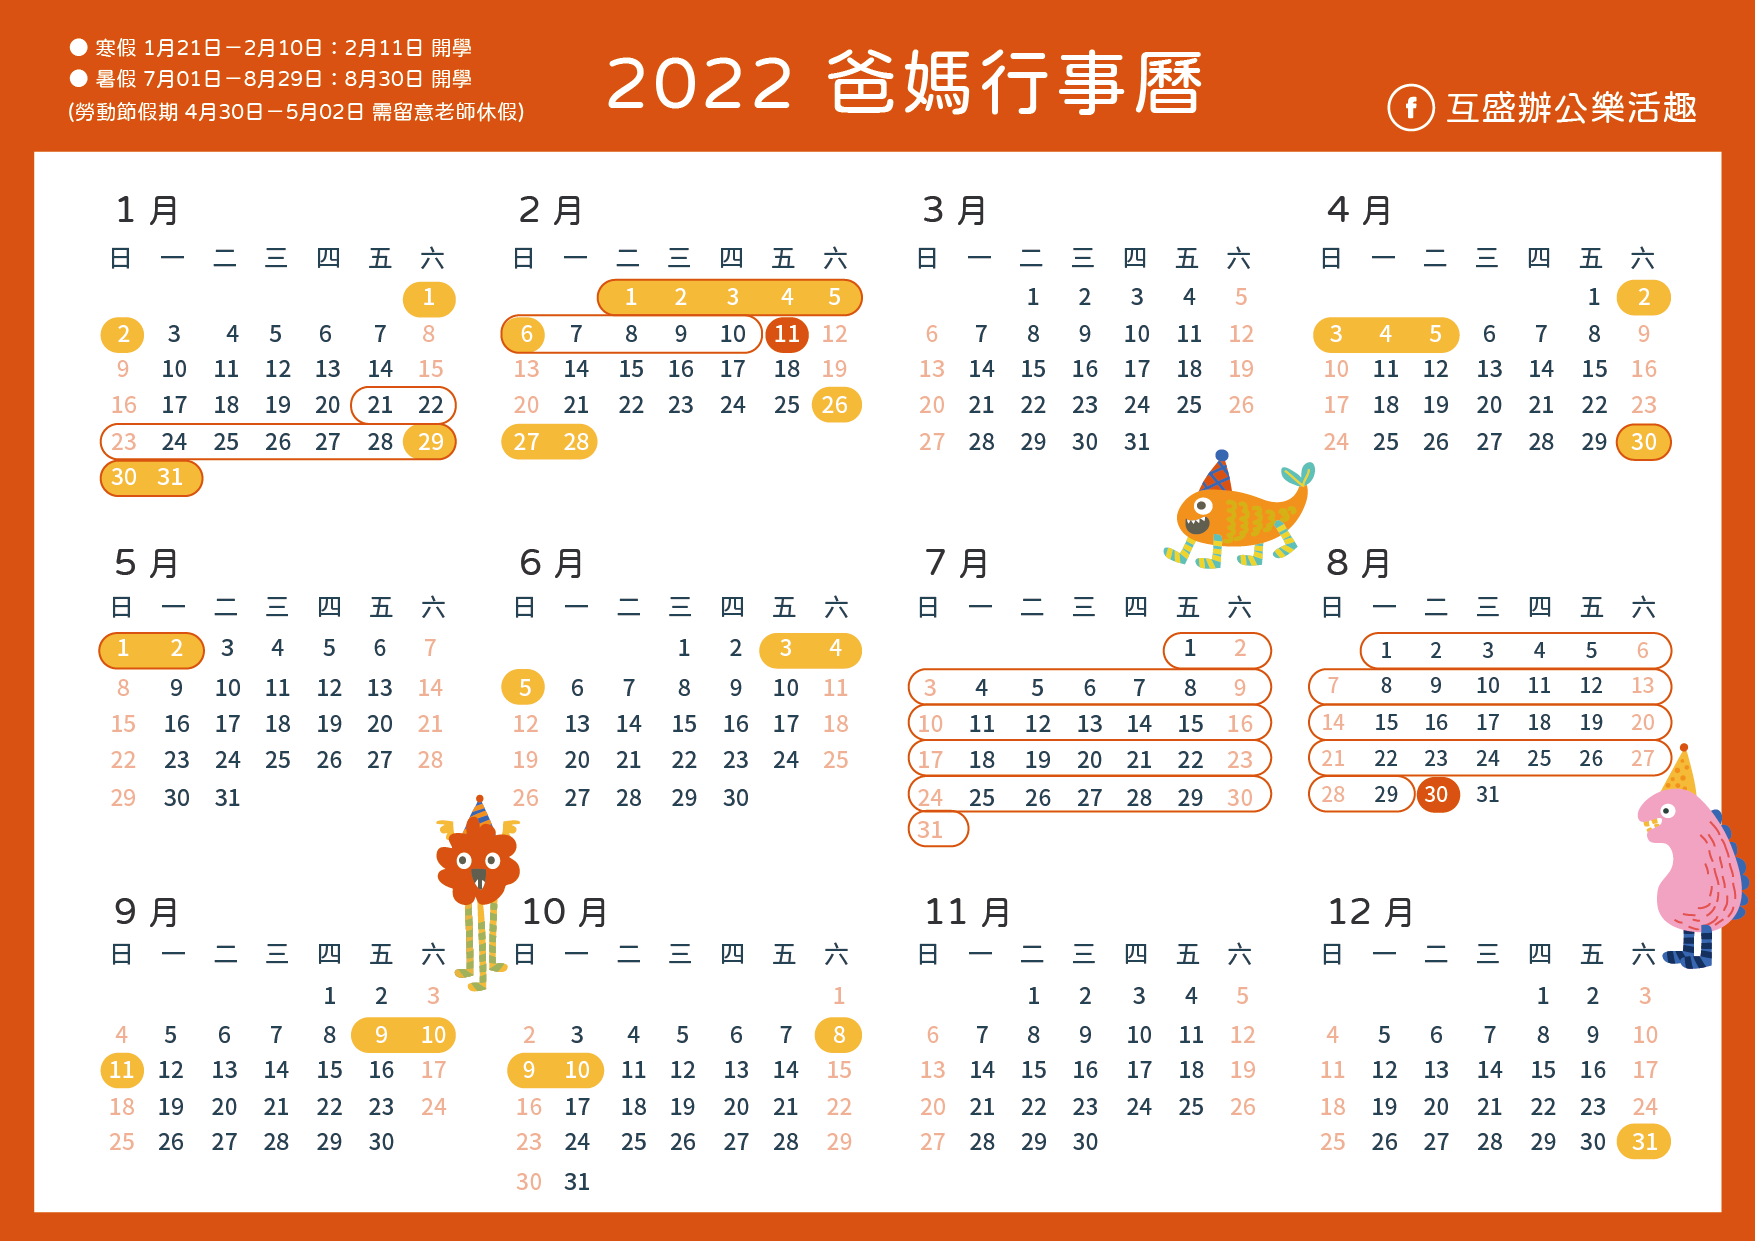 2022行事曆_2022連假行事曆下載_小學生寒暑假_國中生寒暑假_行事曆_2022_calendar